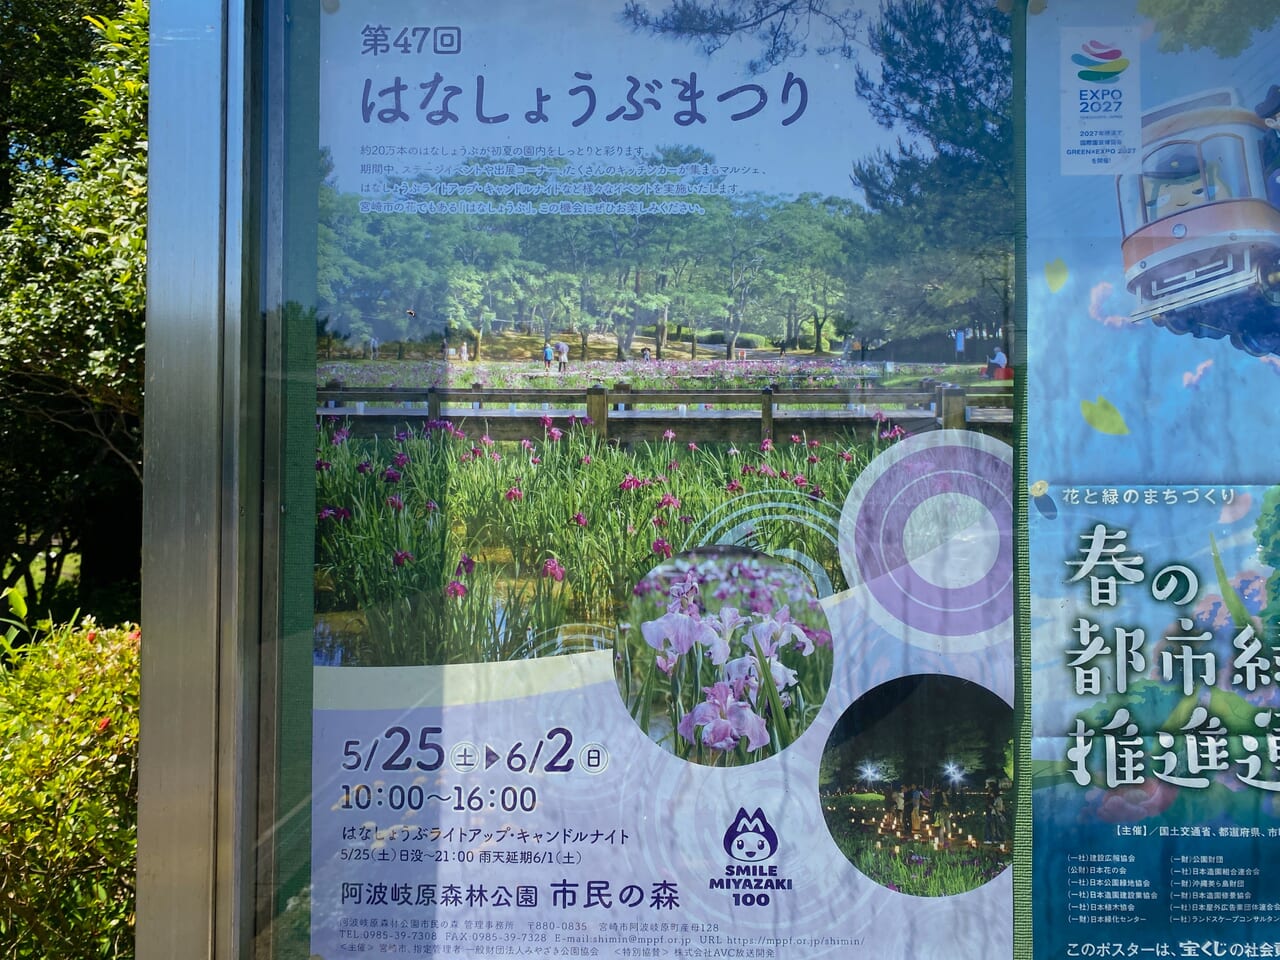 宮崎市イベント 阿波岐原森林公園 市民の森 第47回 はなしょうぶまつり 画像7